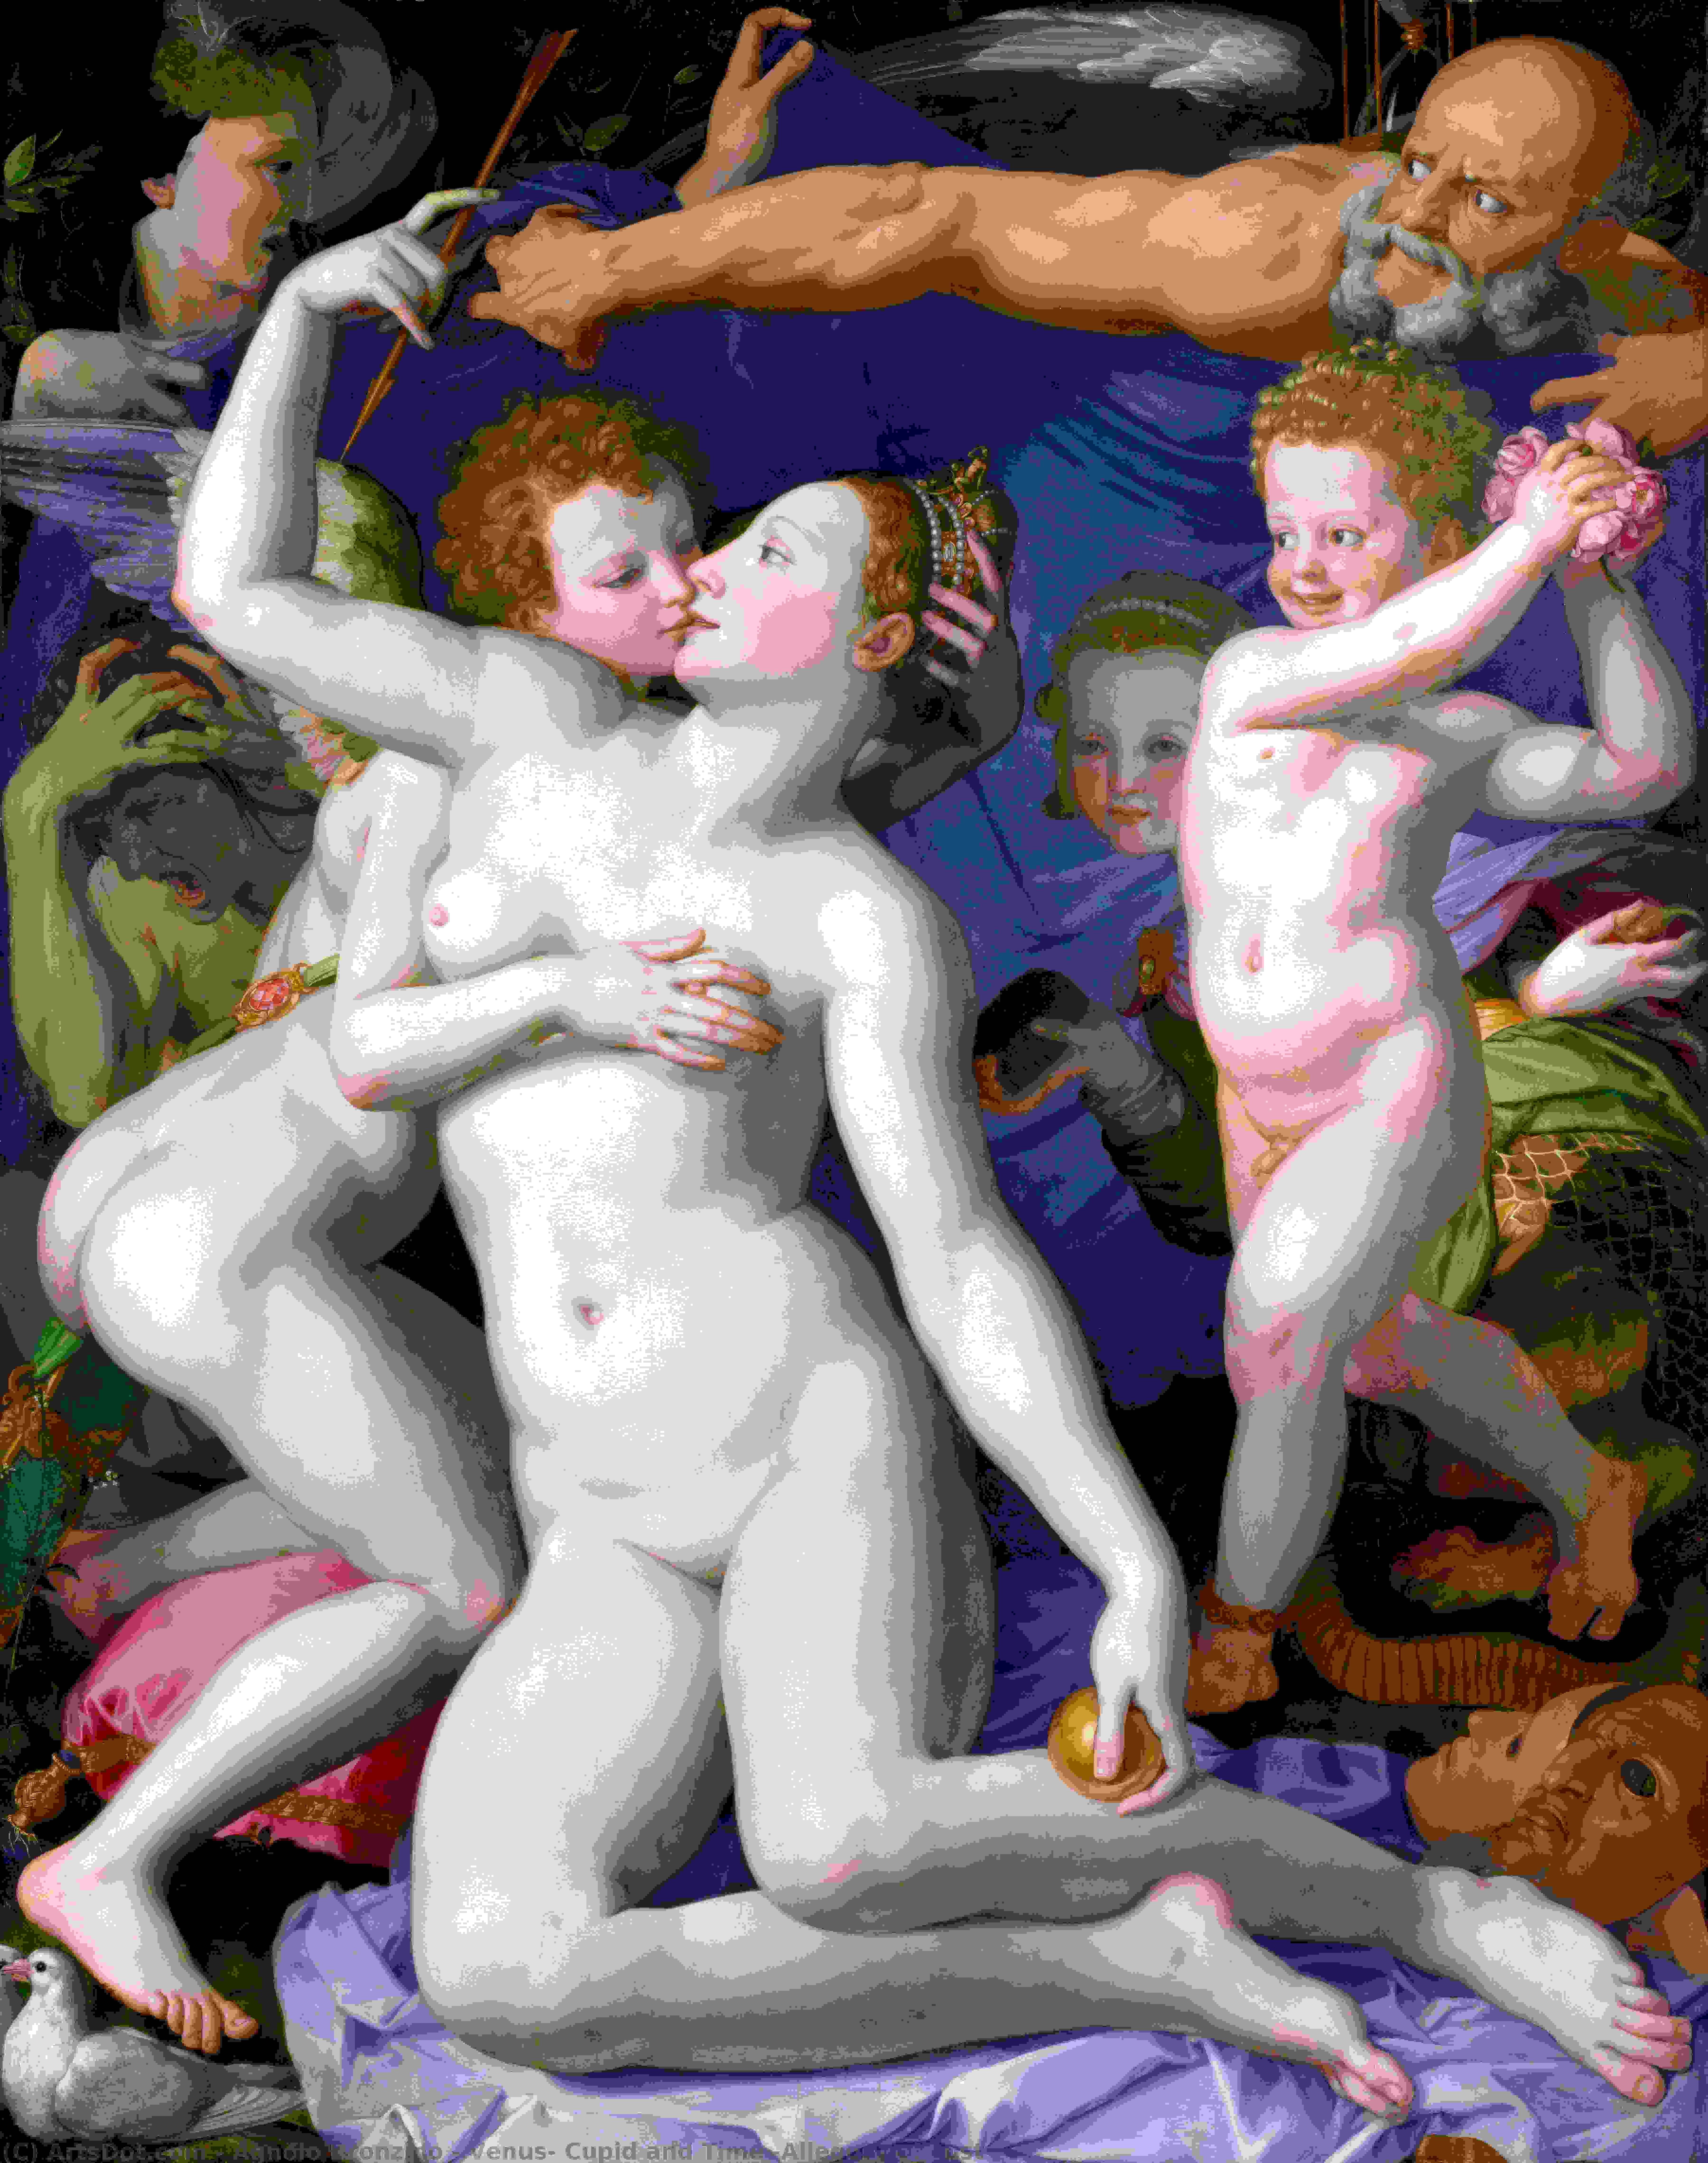 Compre Museu De Reproduções De Arte Vénus, Cupido e Tempo (Alegoria da Lust), 1540 por Agnolo Bronzino (1503-1572, Italy) | ArtsDot.com